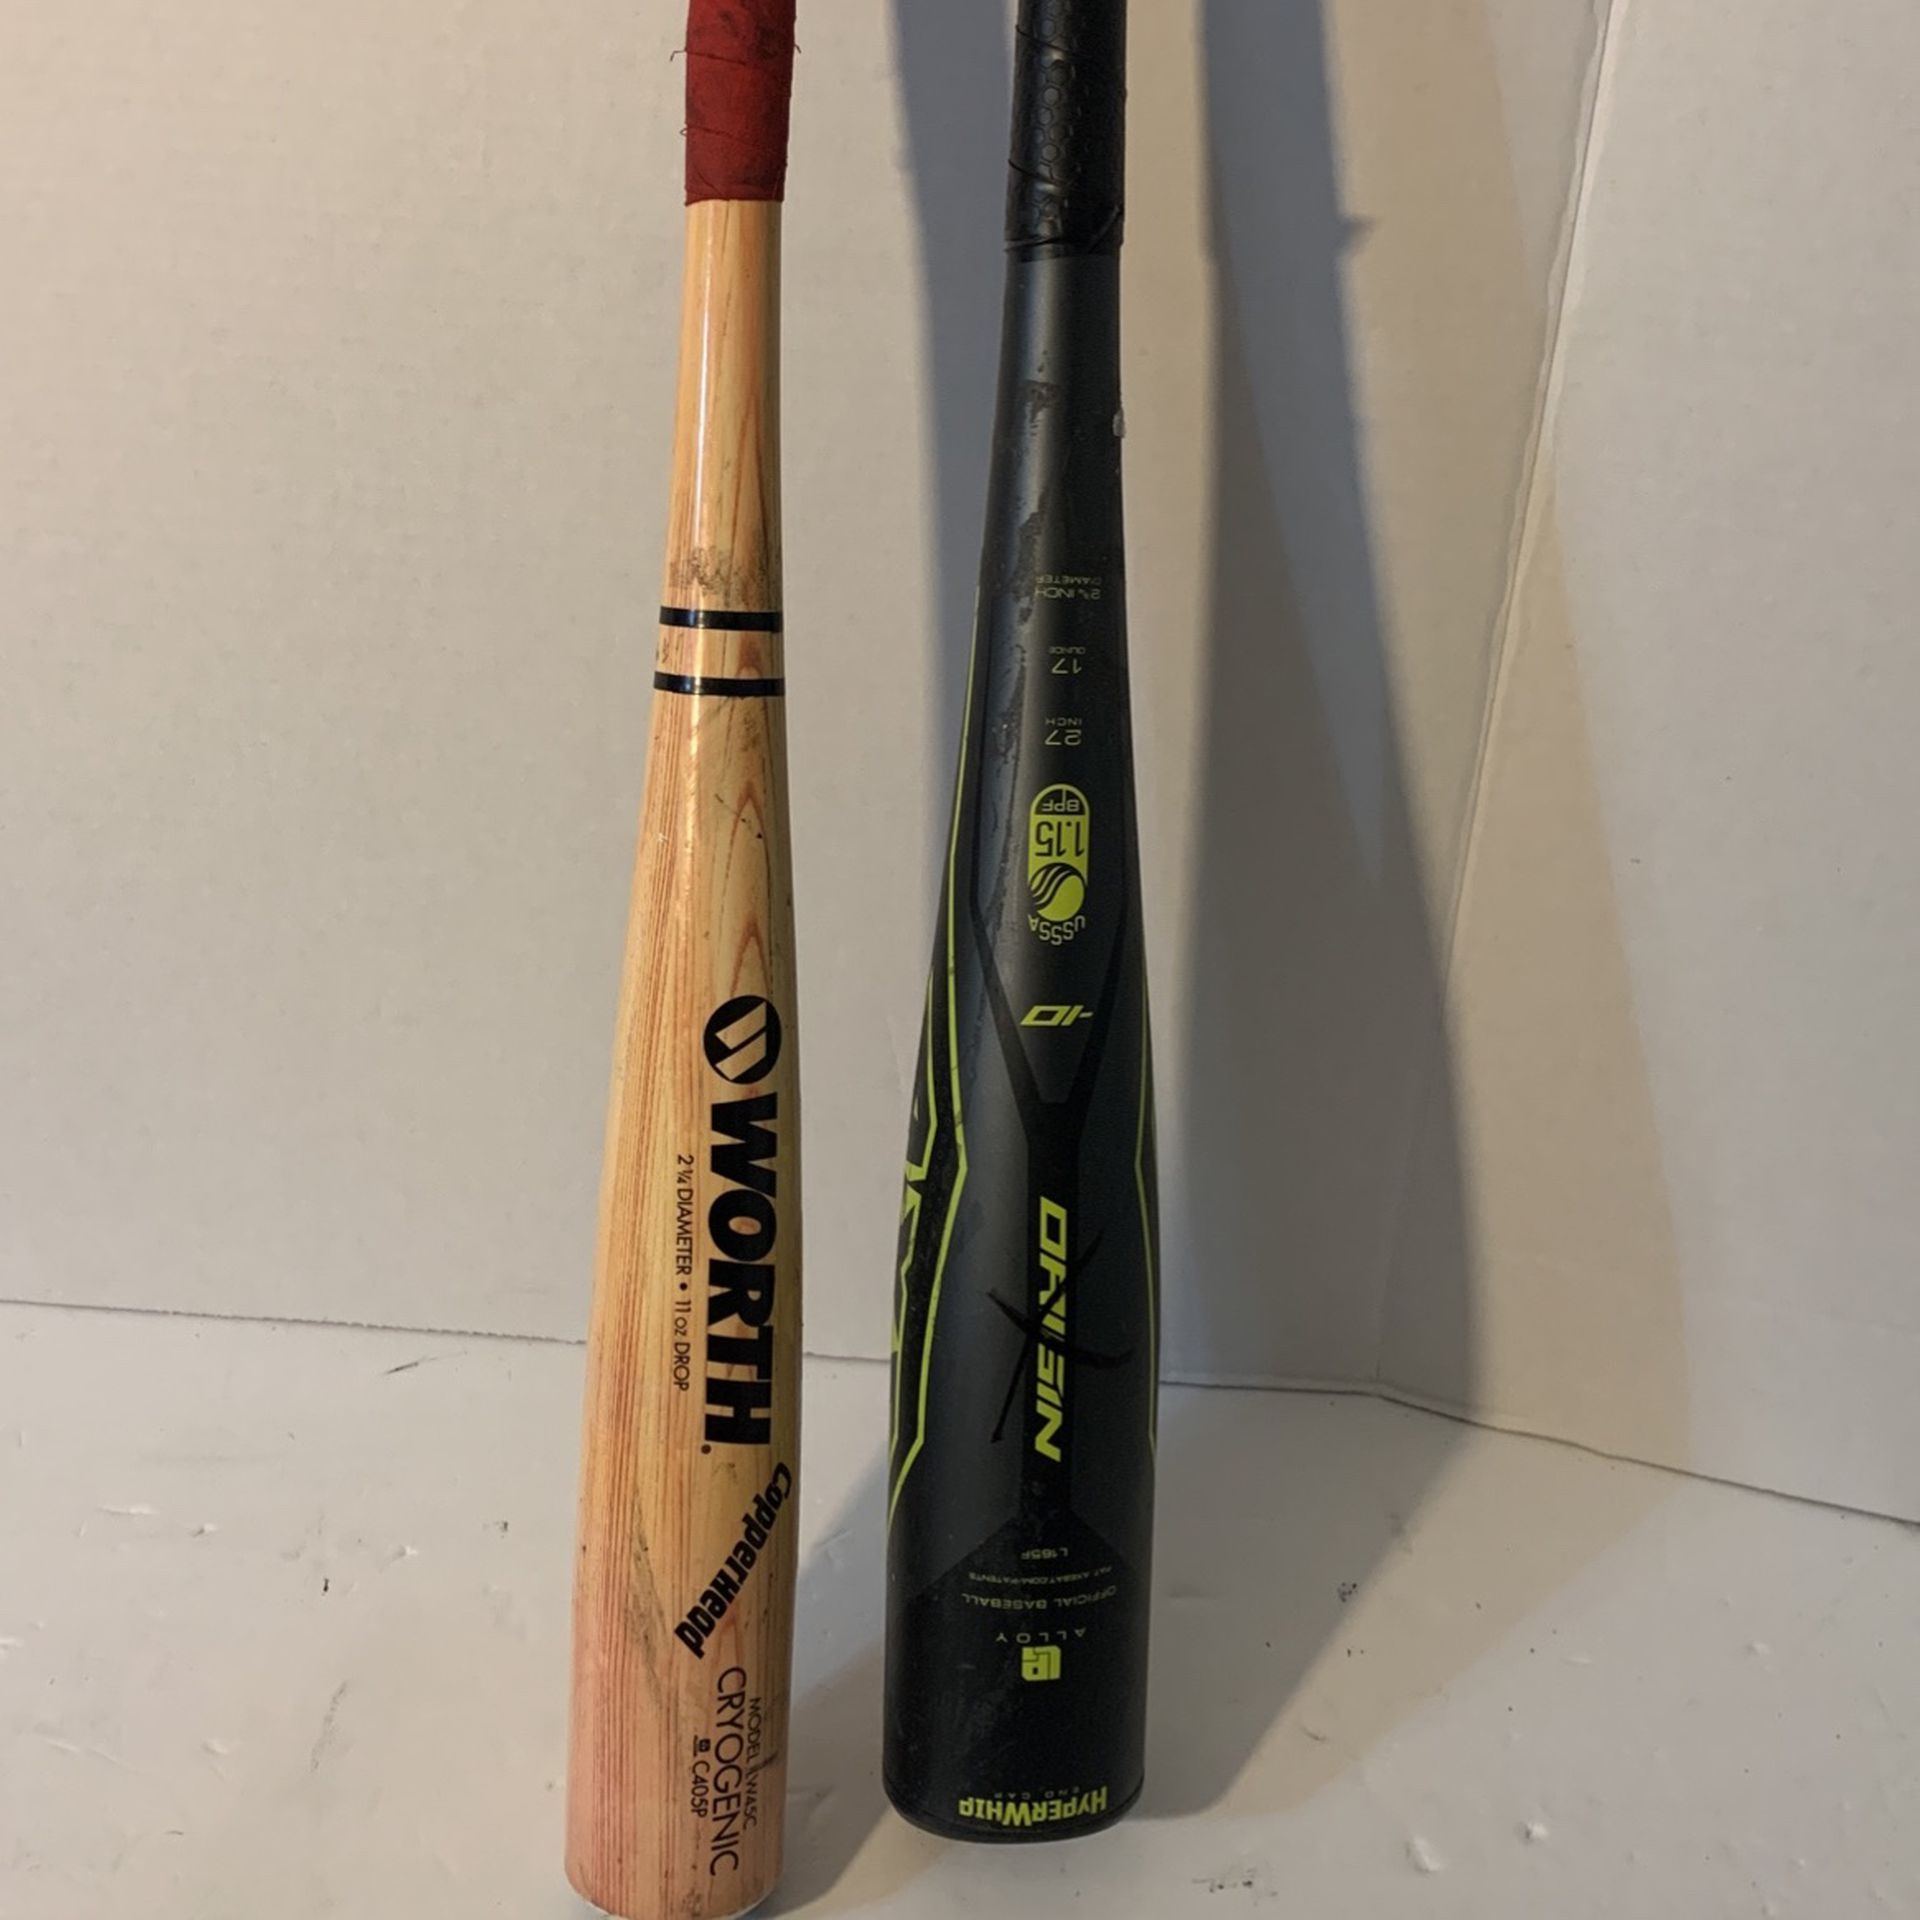 2 Baseball Bats